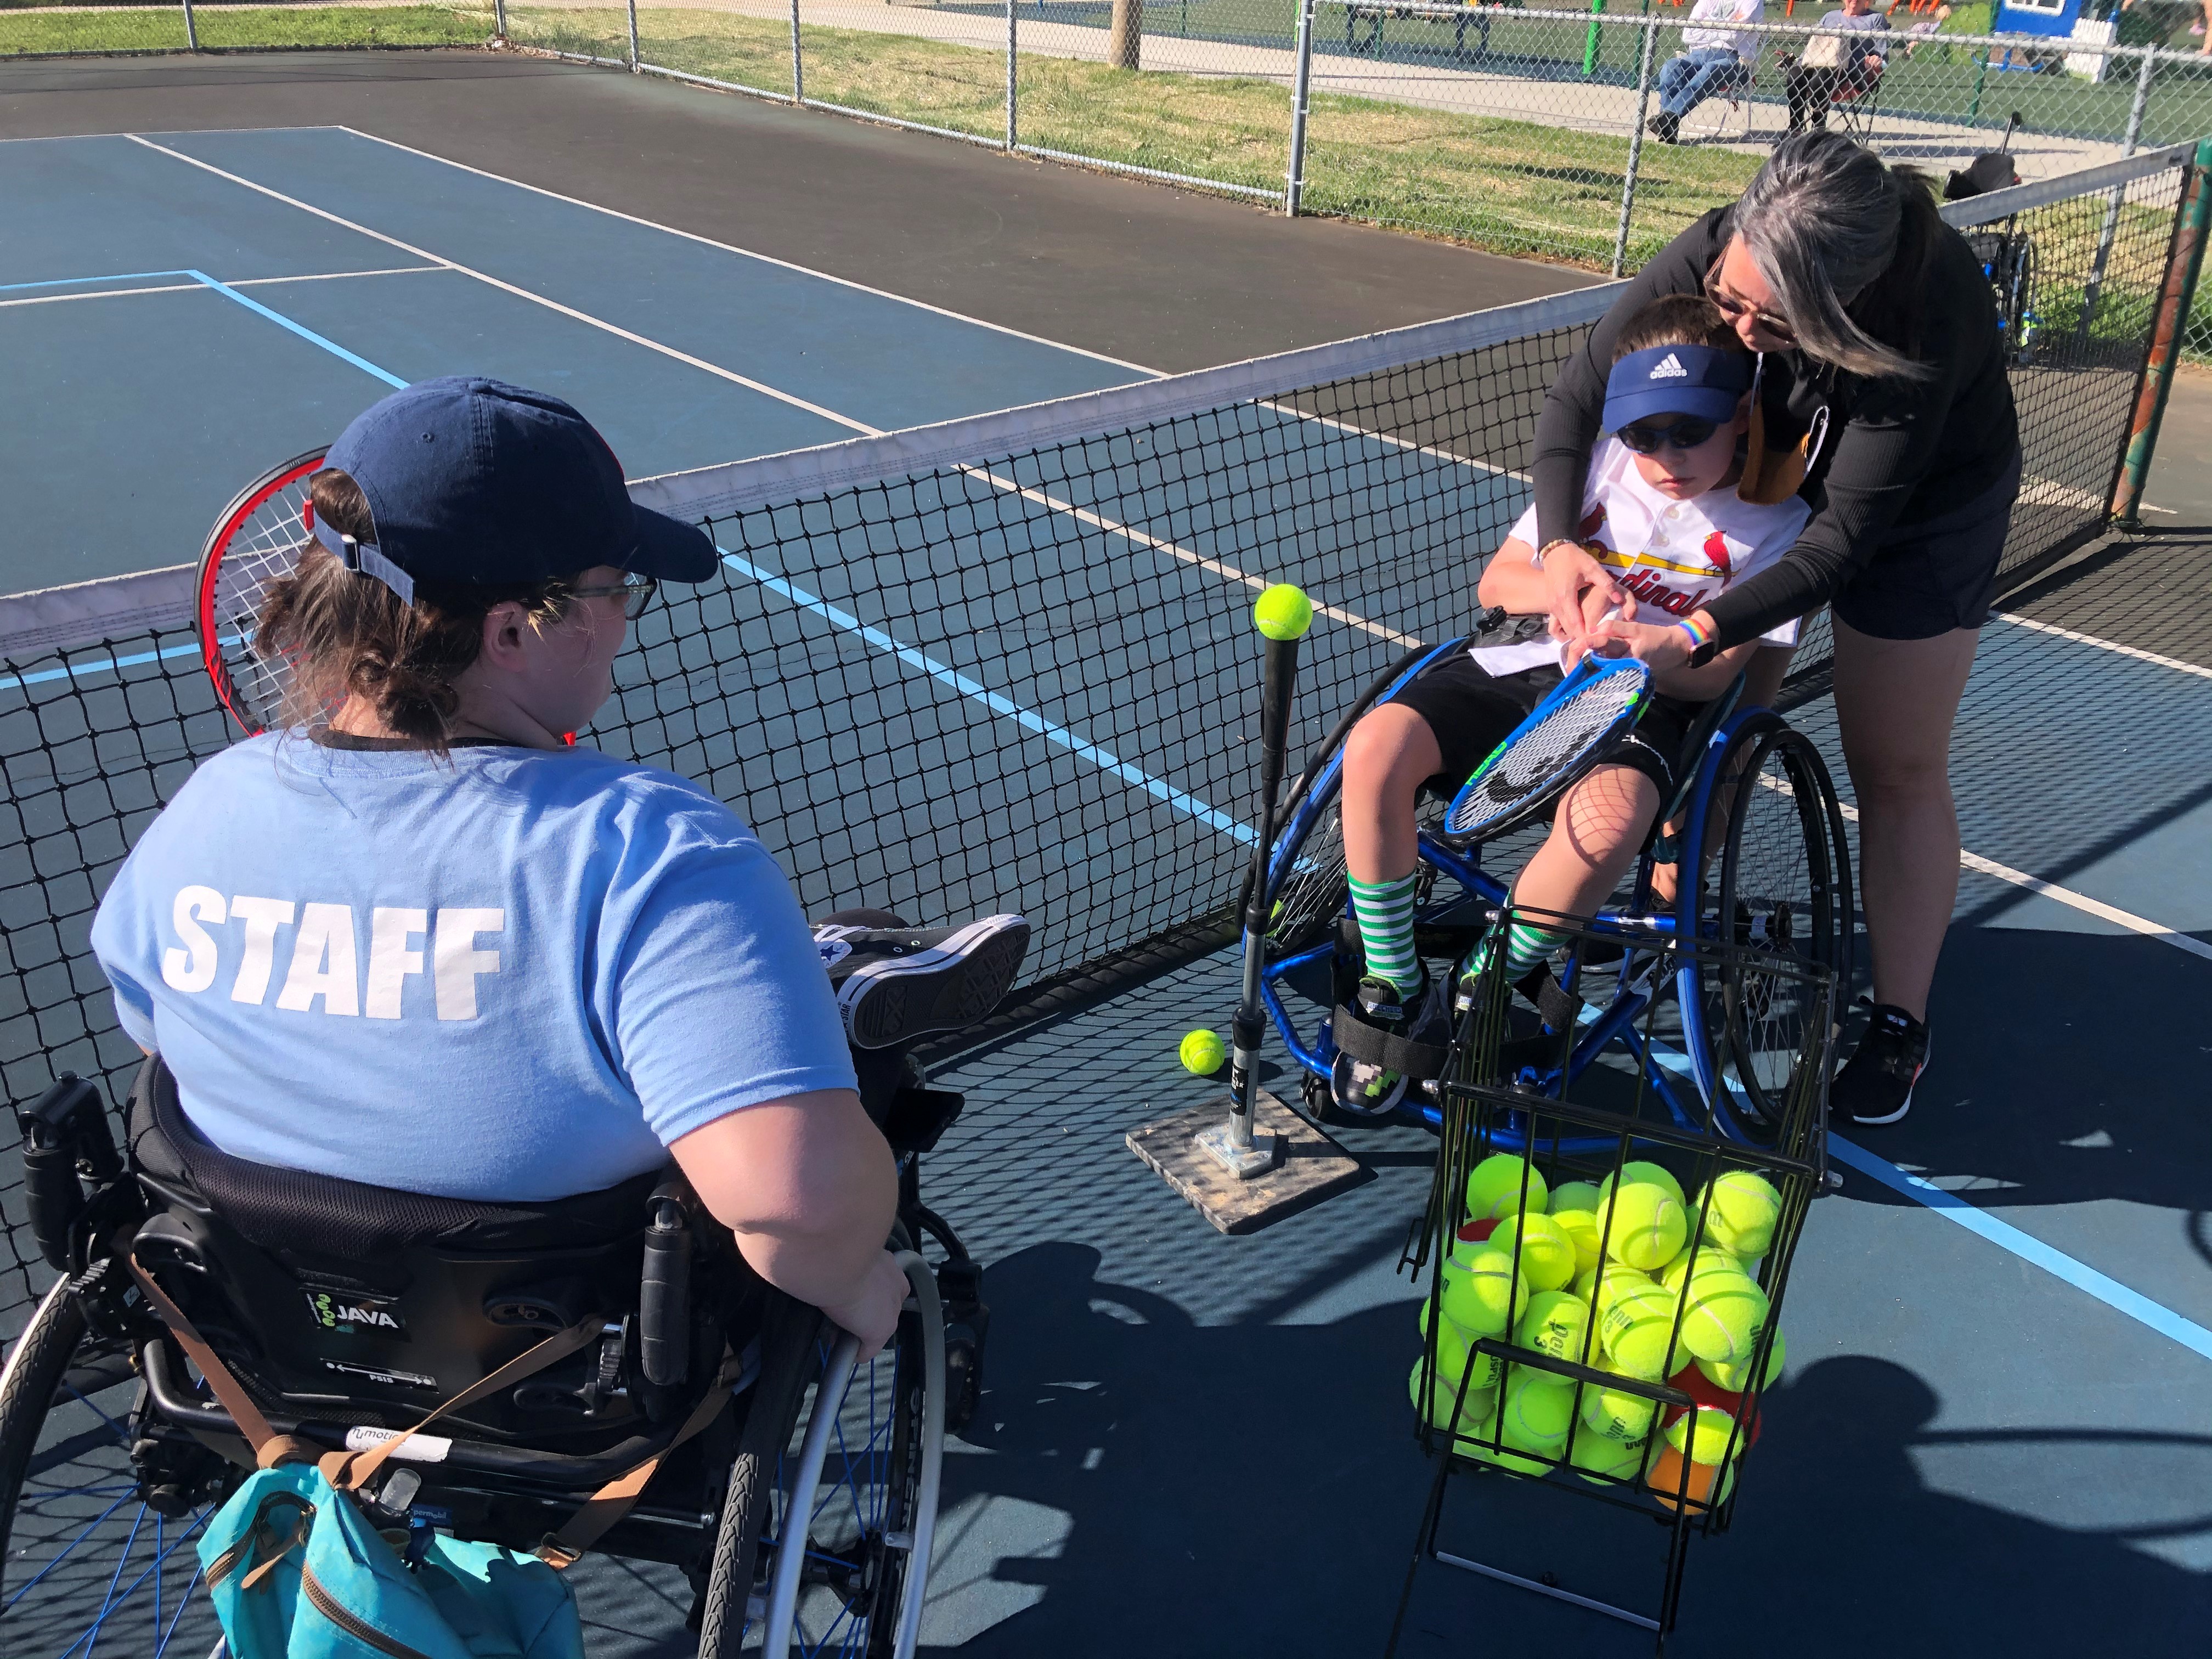 Woman in wheelchair teaching tennis to boy in wheelchair